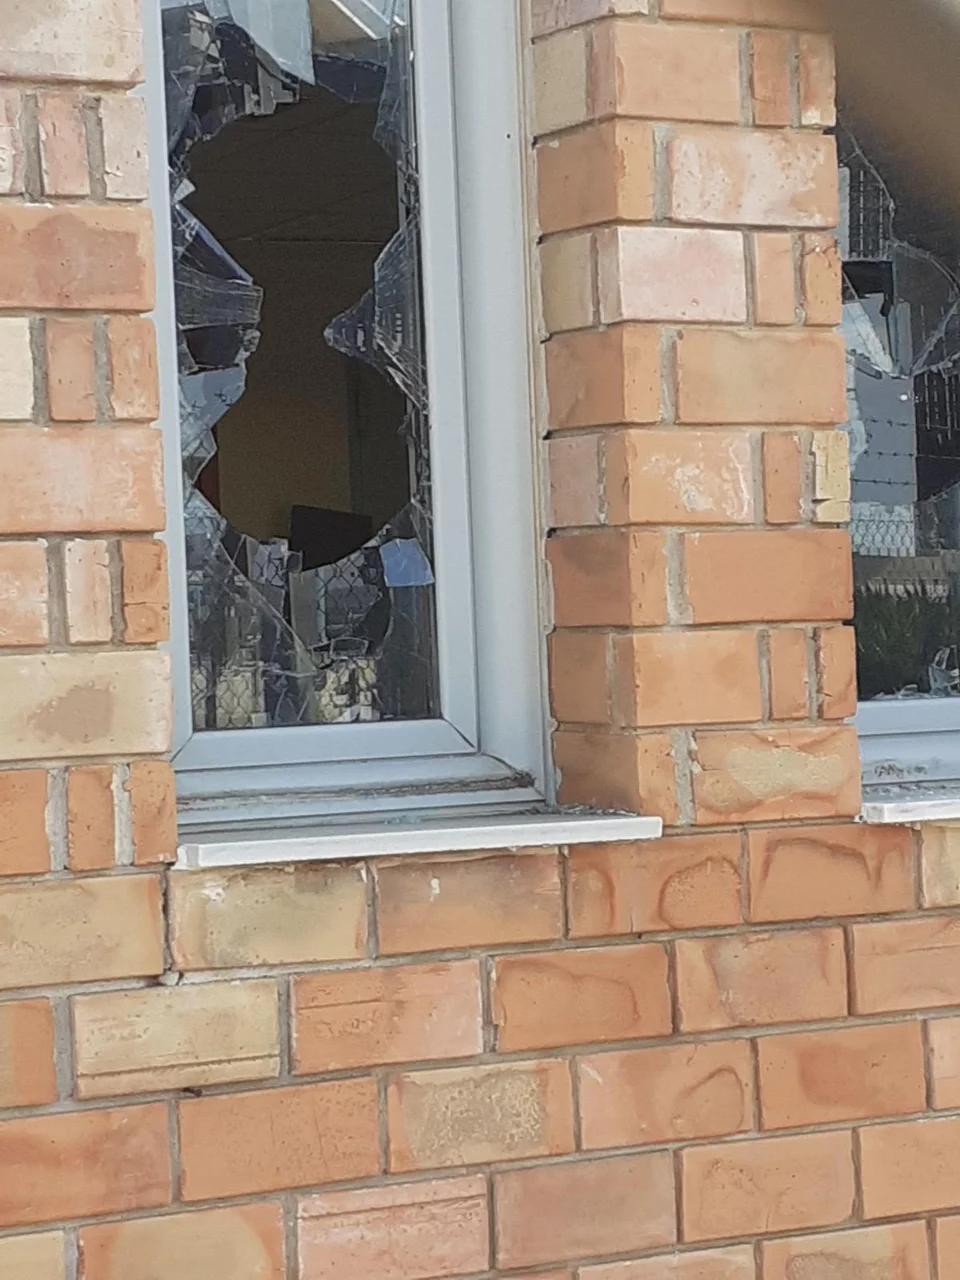 Δείτε φωτογραφίες από την επίθεση του Ρουβίκωνα στα γραφεία της Αττικής Οδού